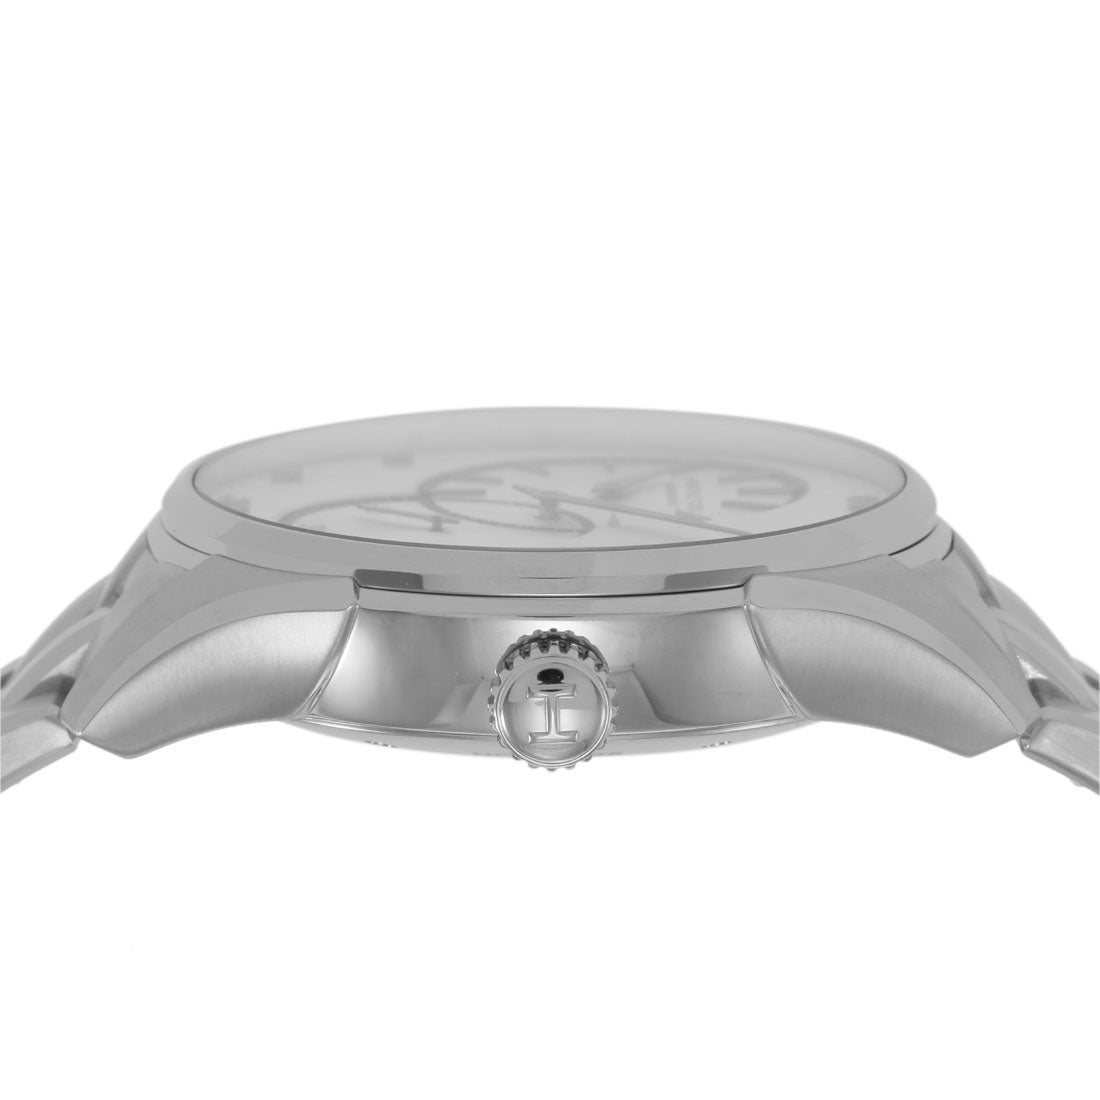 ハミルトン HAMILTON ジャズマスター メンズ 時計 H42615153 自動巻 シルバー ステンレススチール スイス （シルバー）